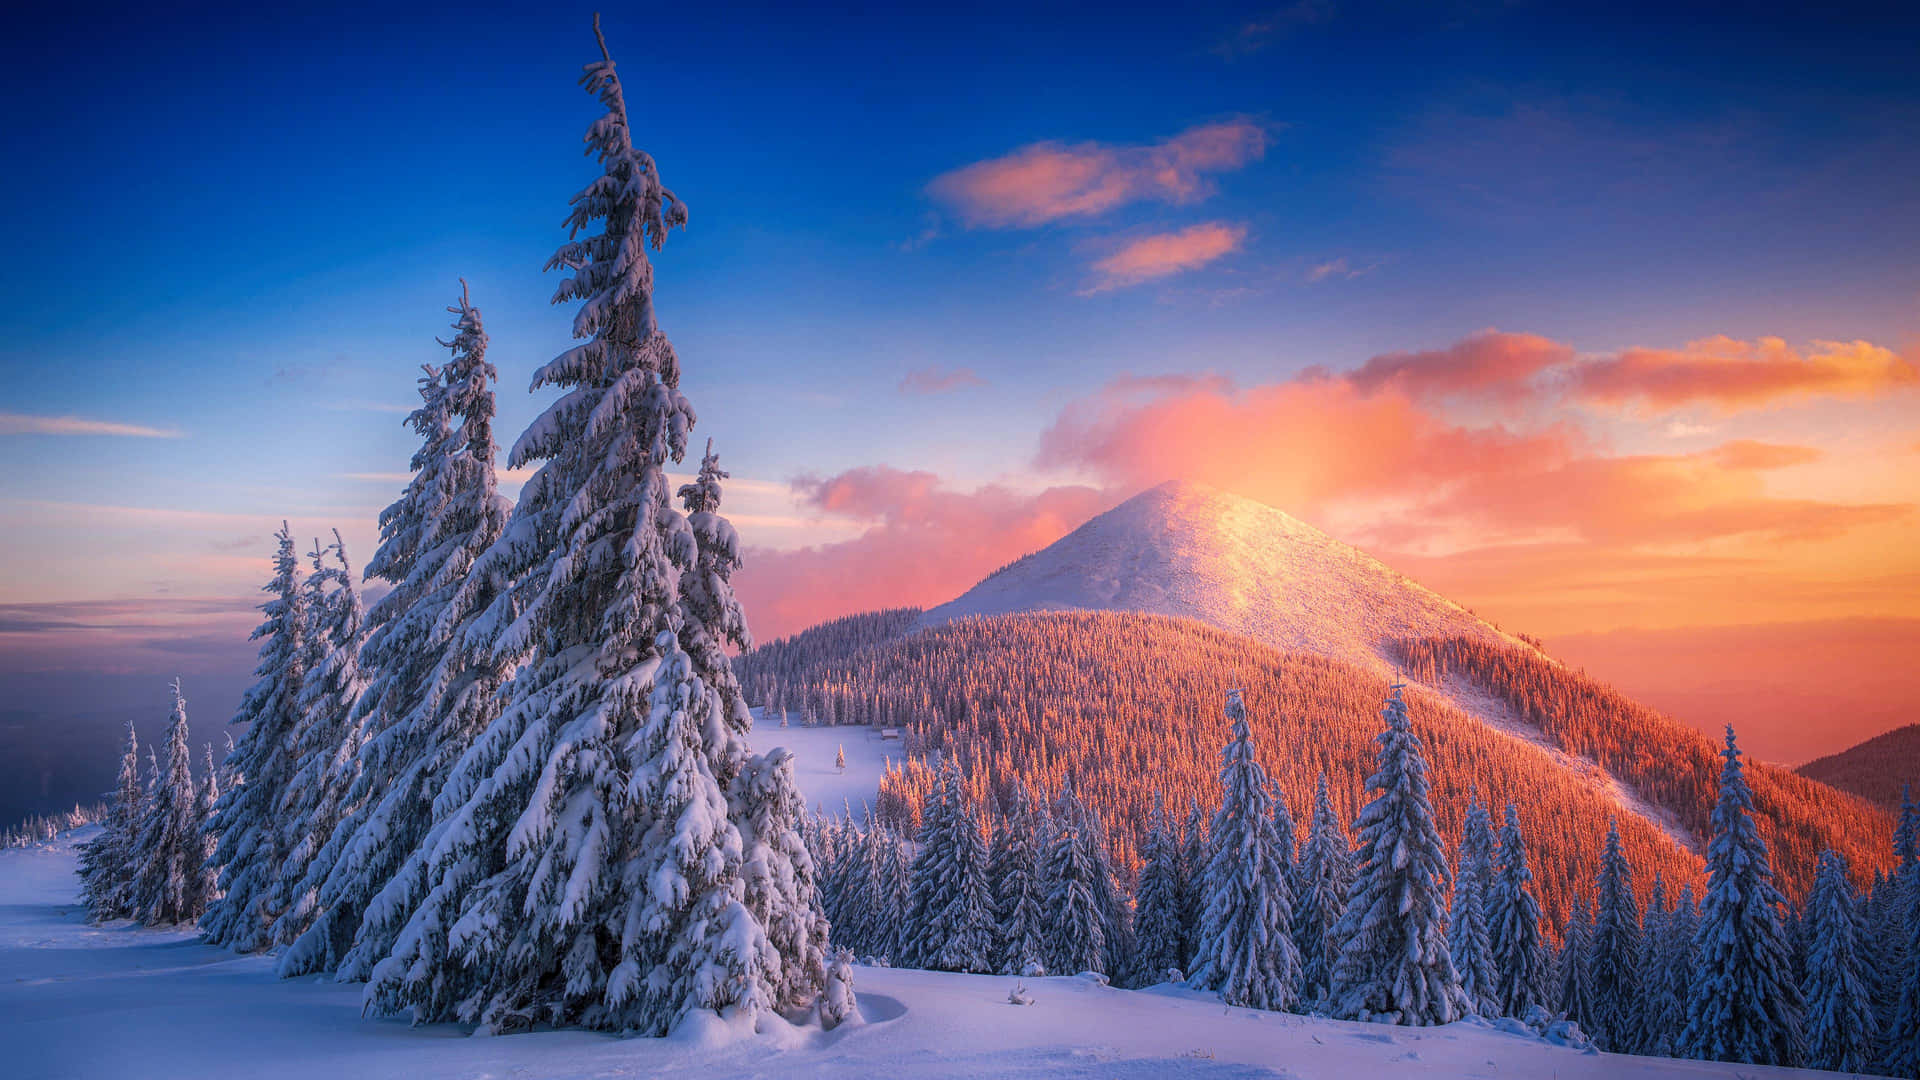 Majestic Snowy Landscape in Winter Season Wallpaper